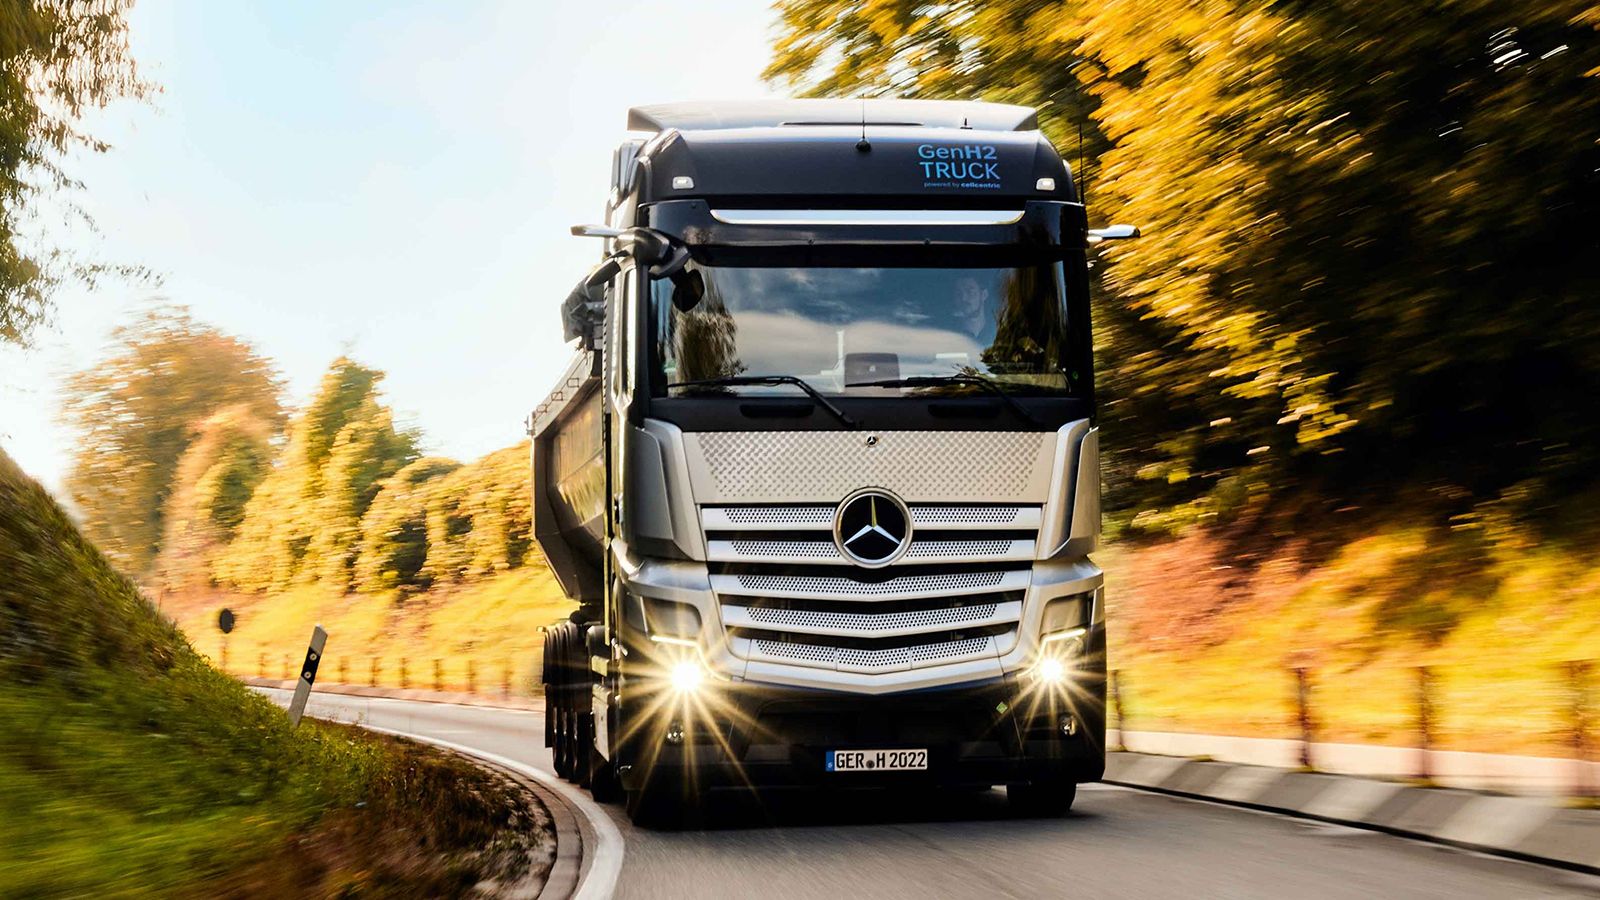 Πάνω από 1.000 χιλιόμετρα αυτονομίας θα εμφανίζουν τα φορτηγά κυψελών καυσίμου της Mercedes-Benz, η μαζική παραγωγή των οποίων προγραμματίζεται να εκκινήσει το 2027.